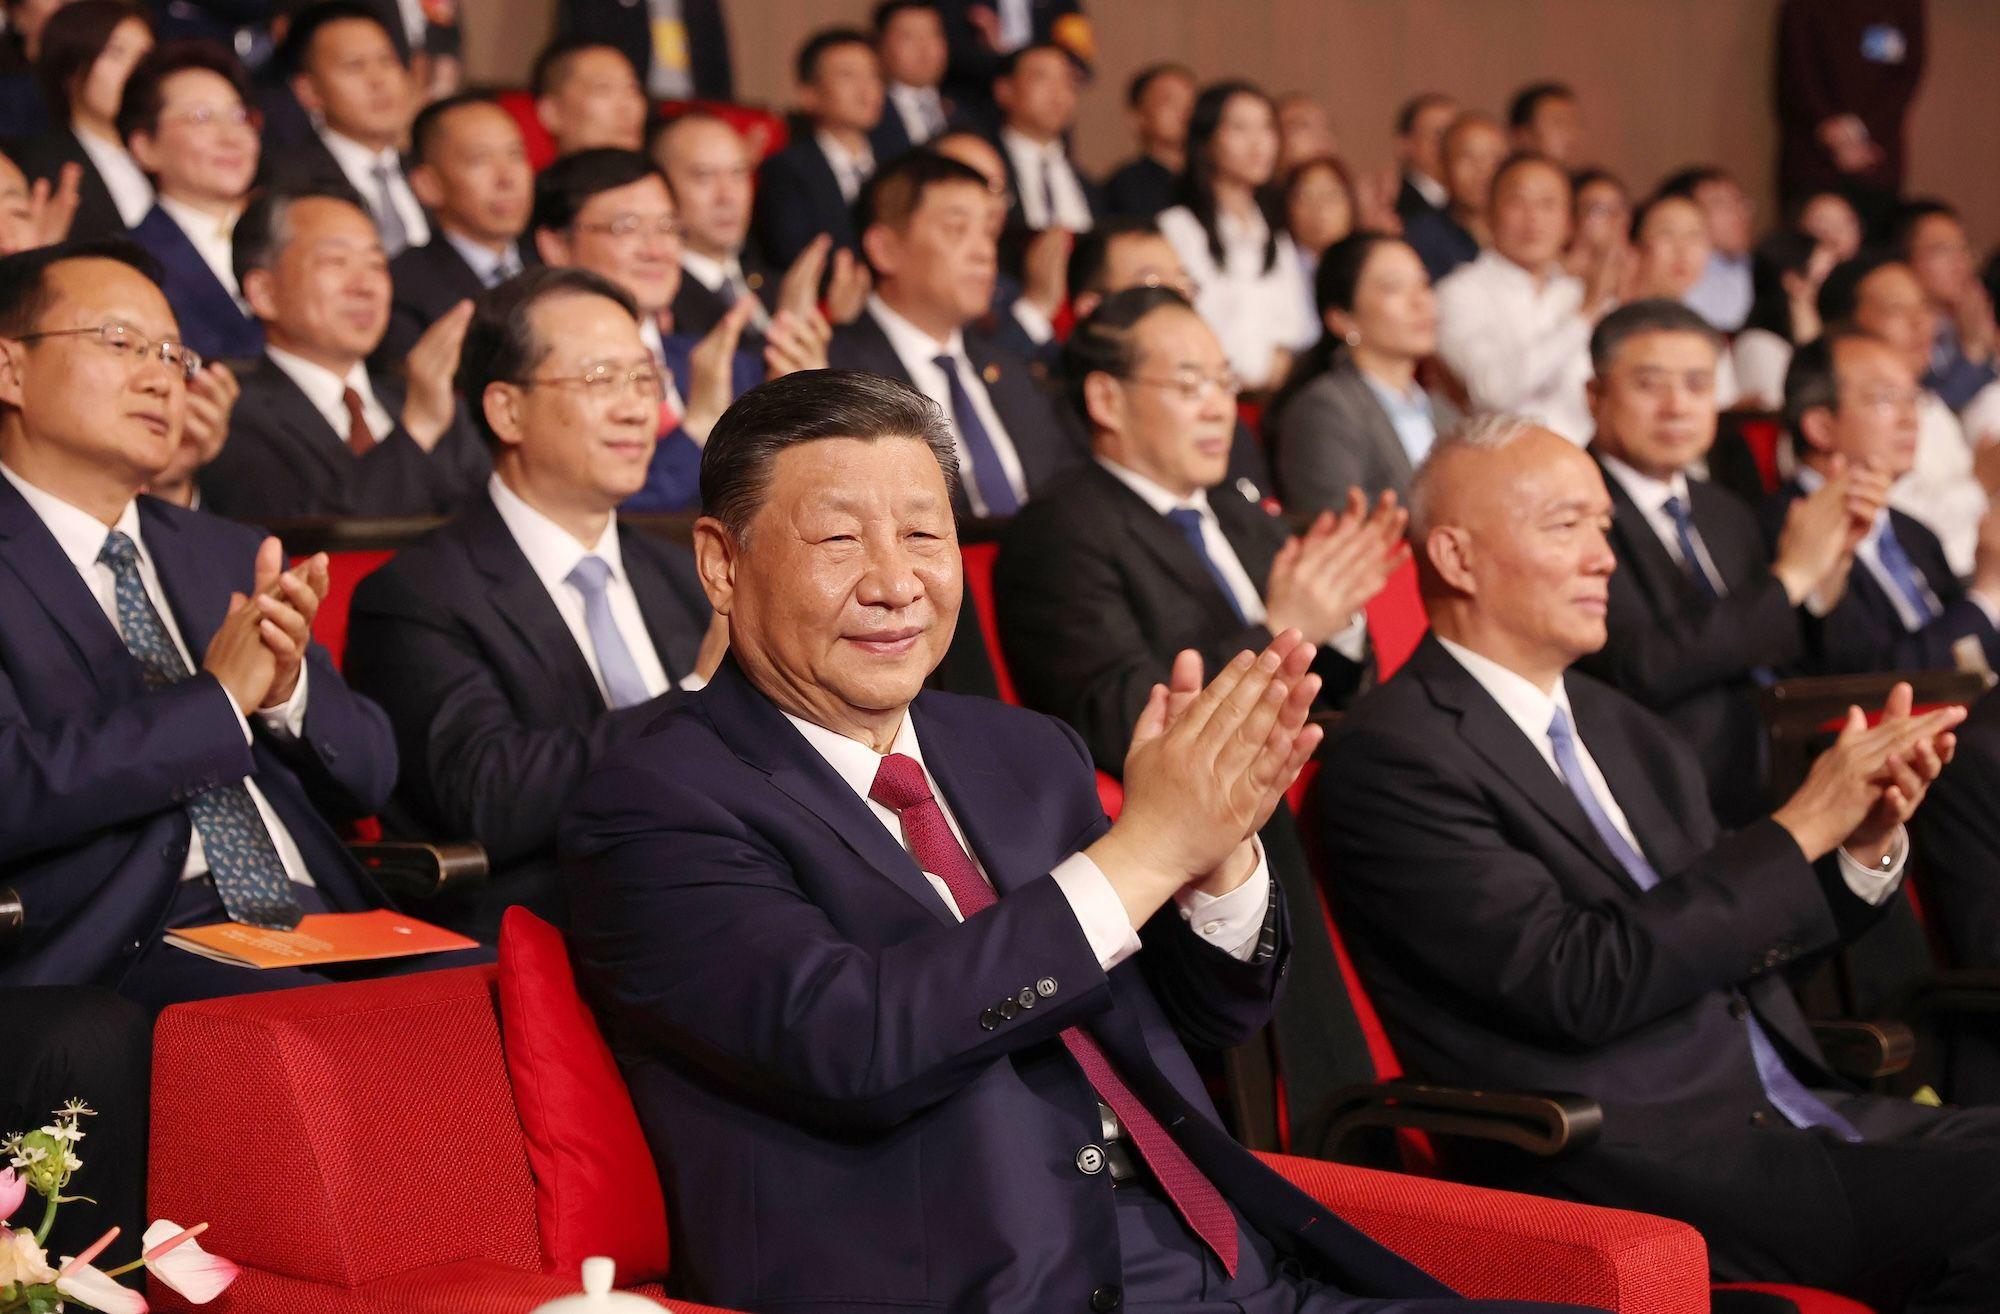 Der chinesische Präsident Xi Jinping nimmt an einem Konzert anlässlich des 75. Jahrestages der Aufnahme diplomatischer Beziehungen zwischen Russland und China teil 